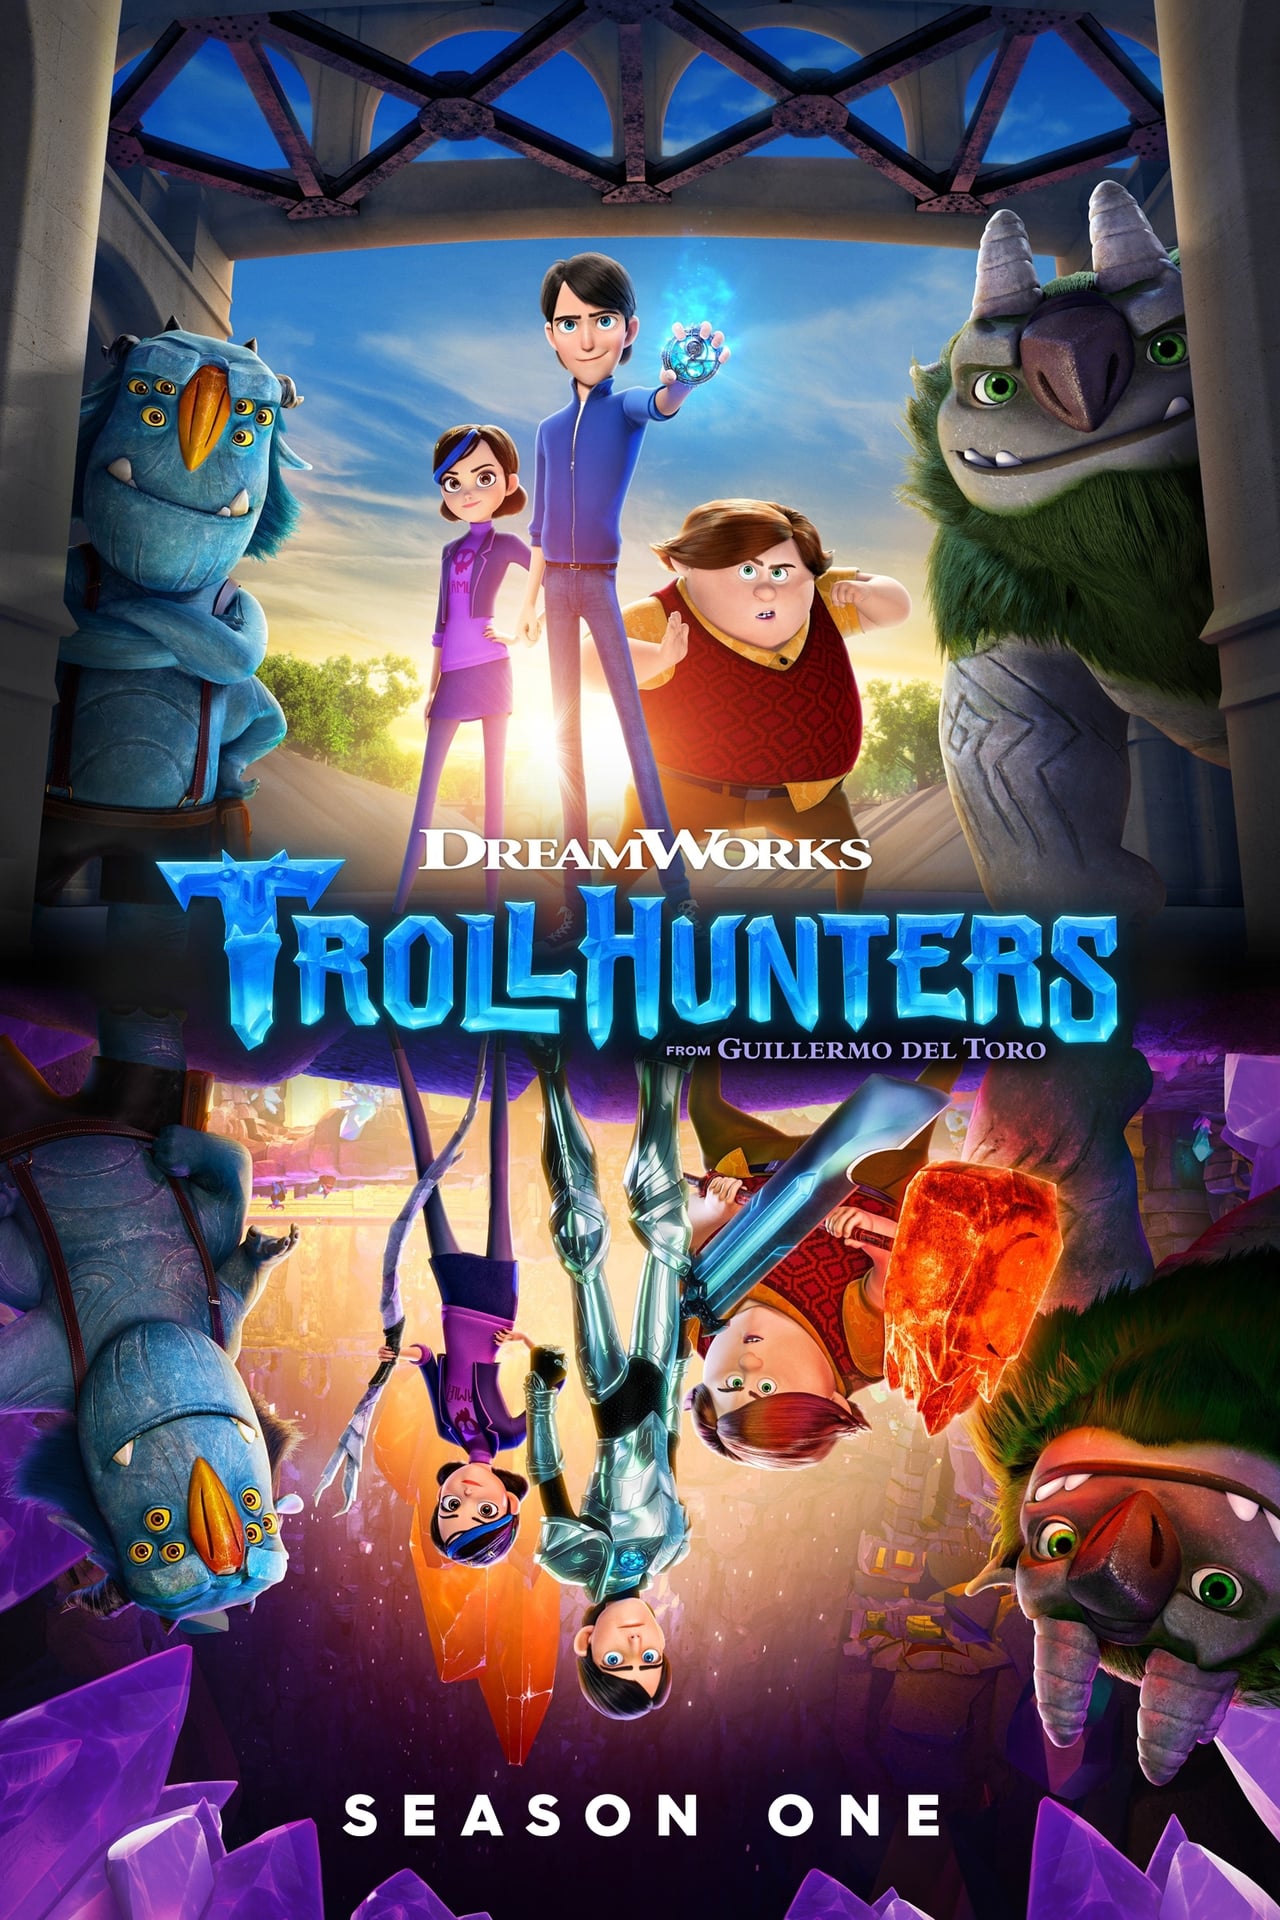 Trollhunters: Tales Of Arcadia Season 1